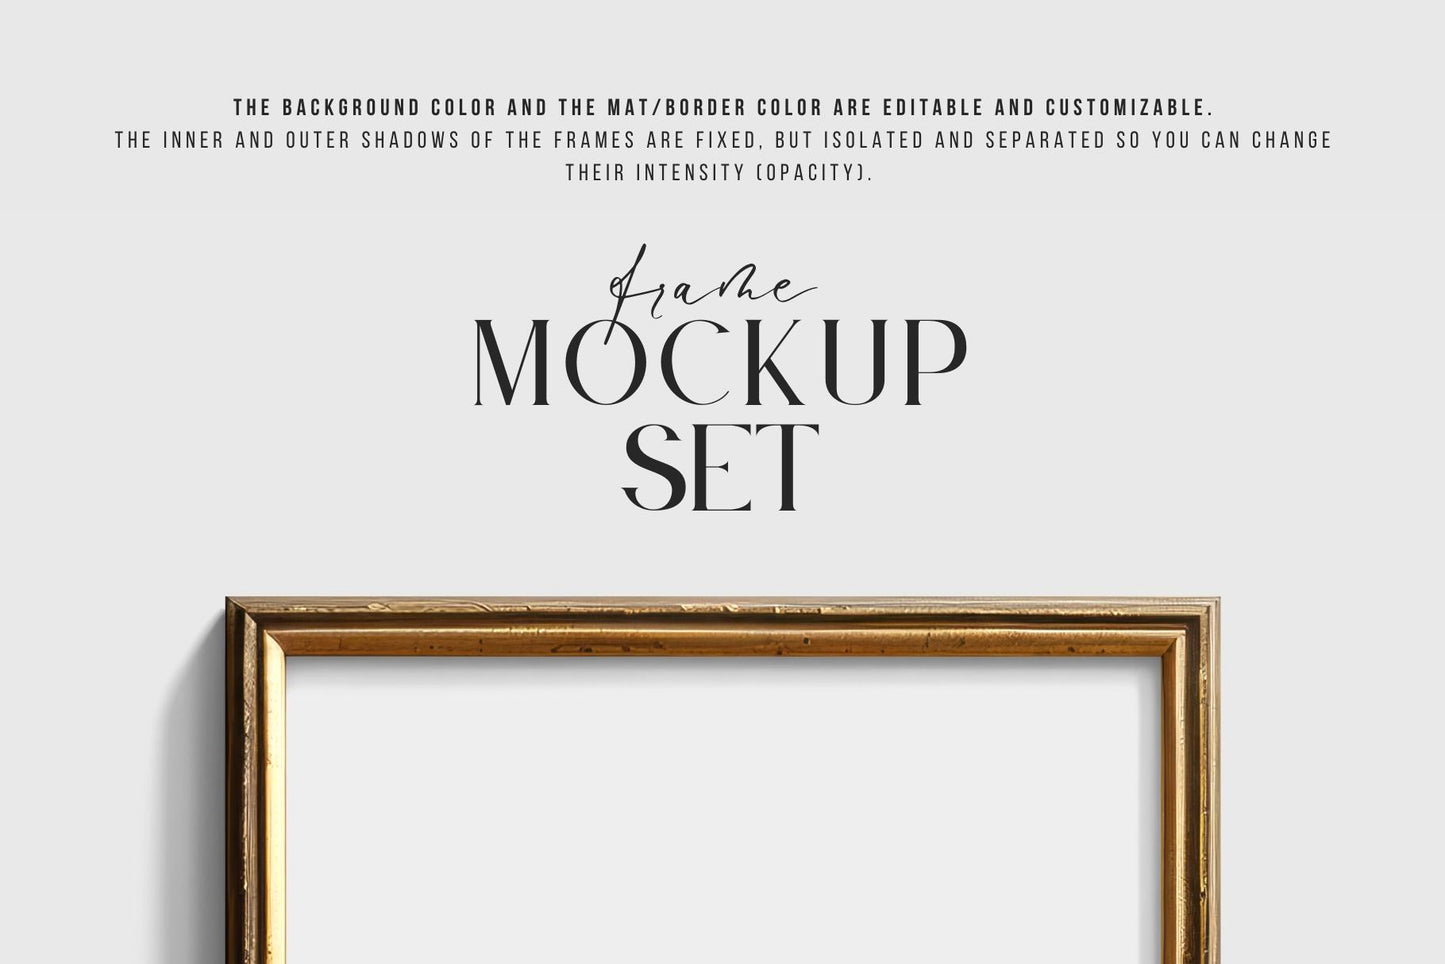 Metallic Frame Mockup Set of 2 Vertical Frames 4:5 | Vintage Gold Frame Mockup Set | PSD Template + Transparent PNG Files